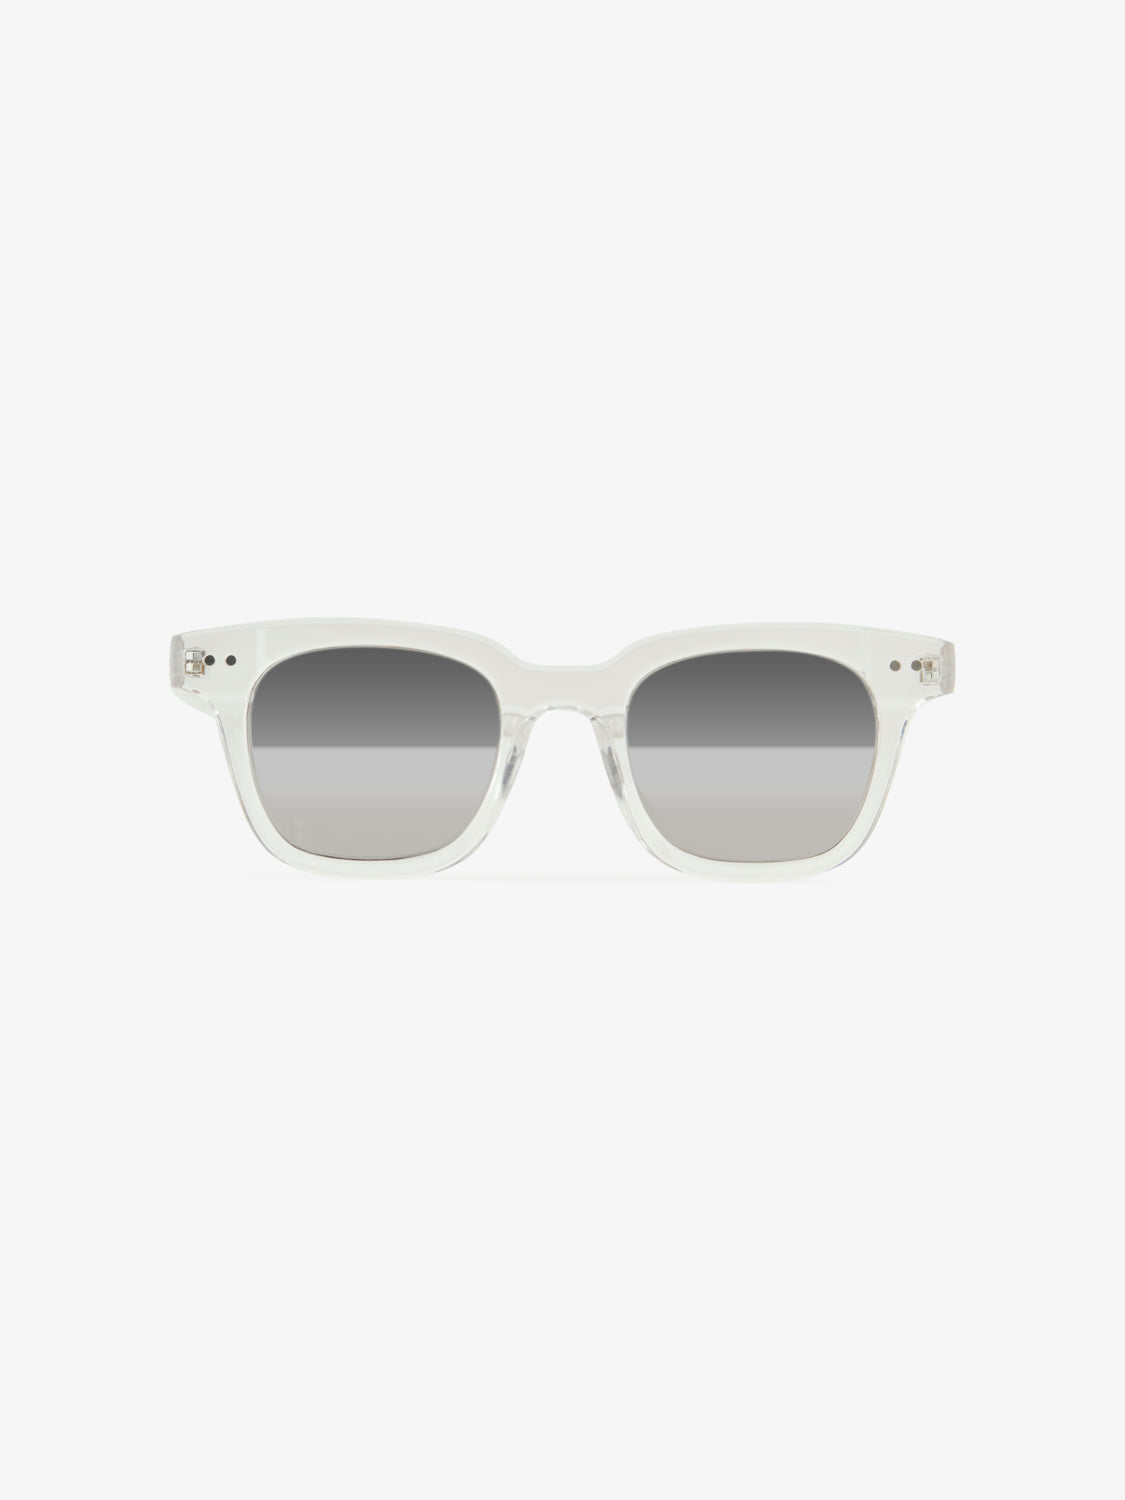 PCHEMMA Sunglasses - Bright White